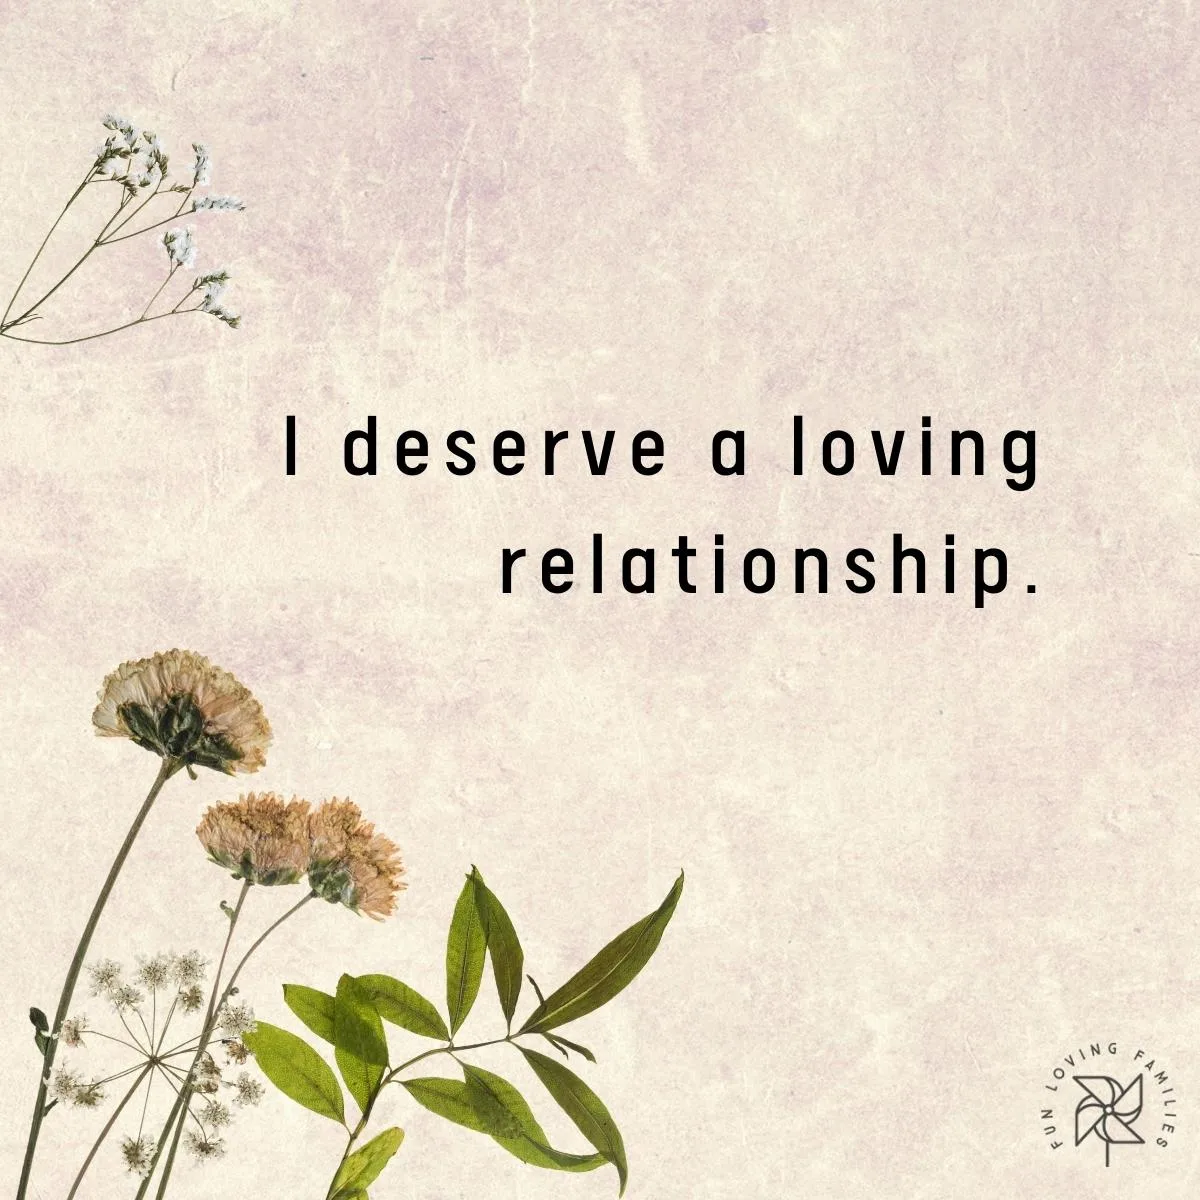 I deserve a loving relationship affirmation image